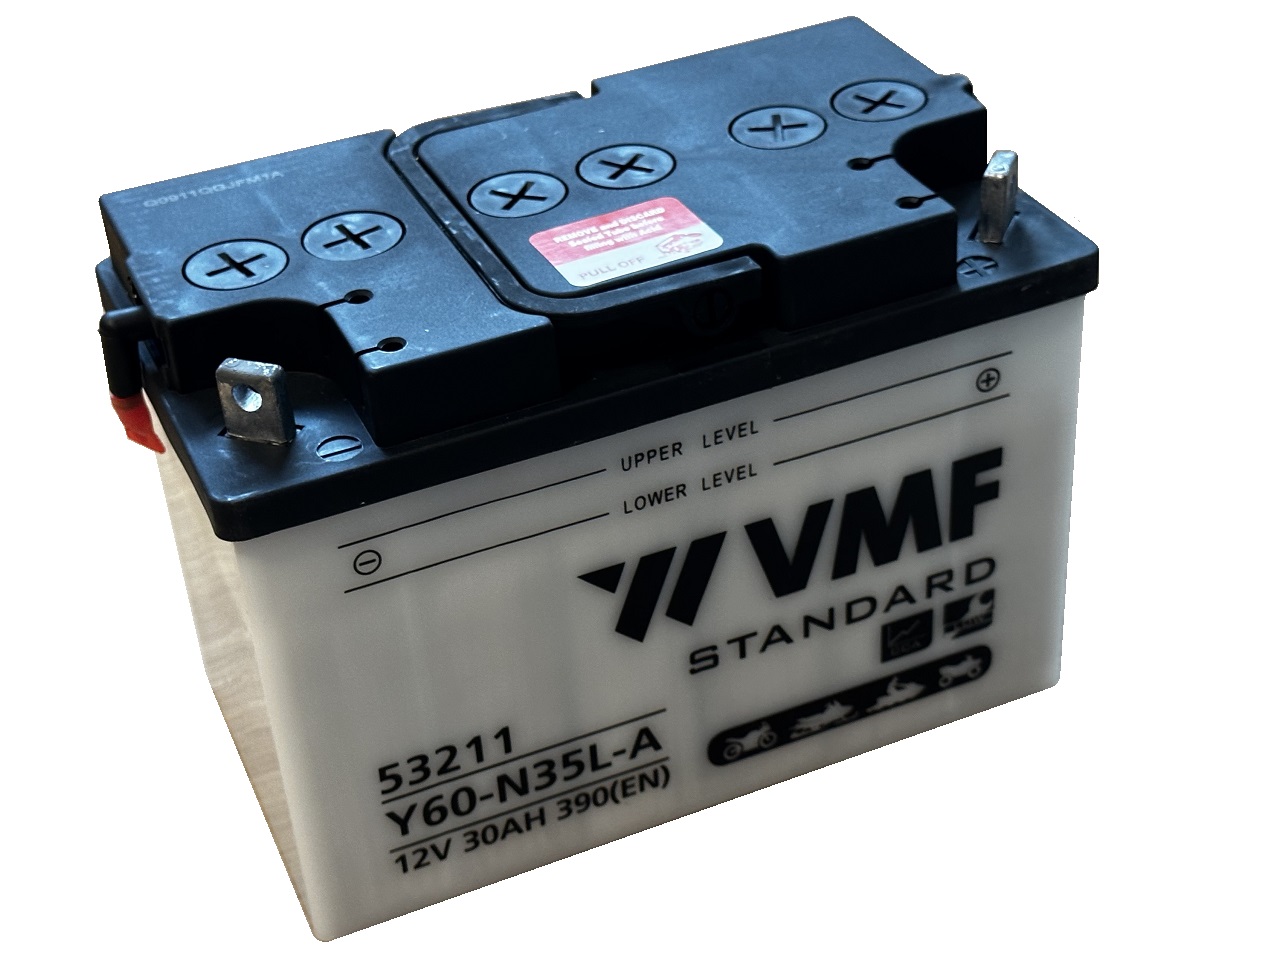 VMF 53211 Y60-N35L-A / 12V 30AH 390(EN) compleet met zuur